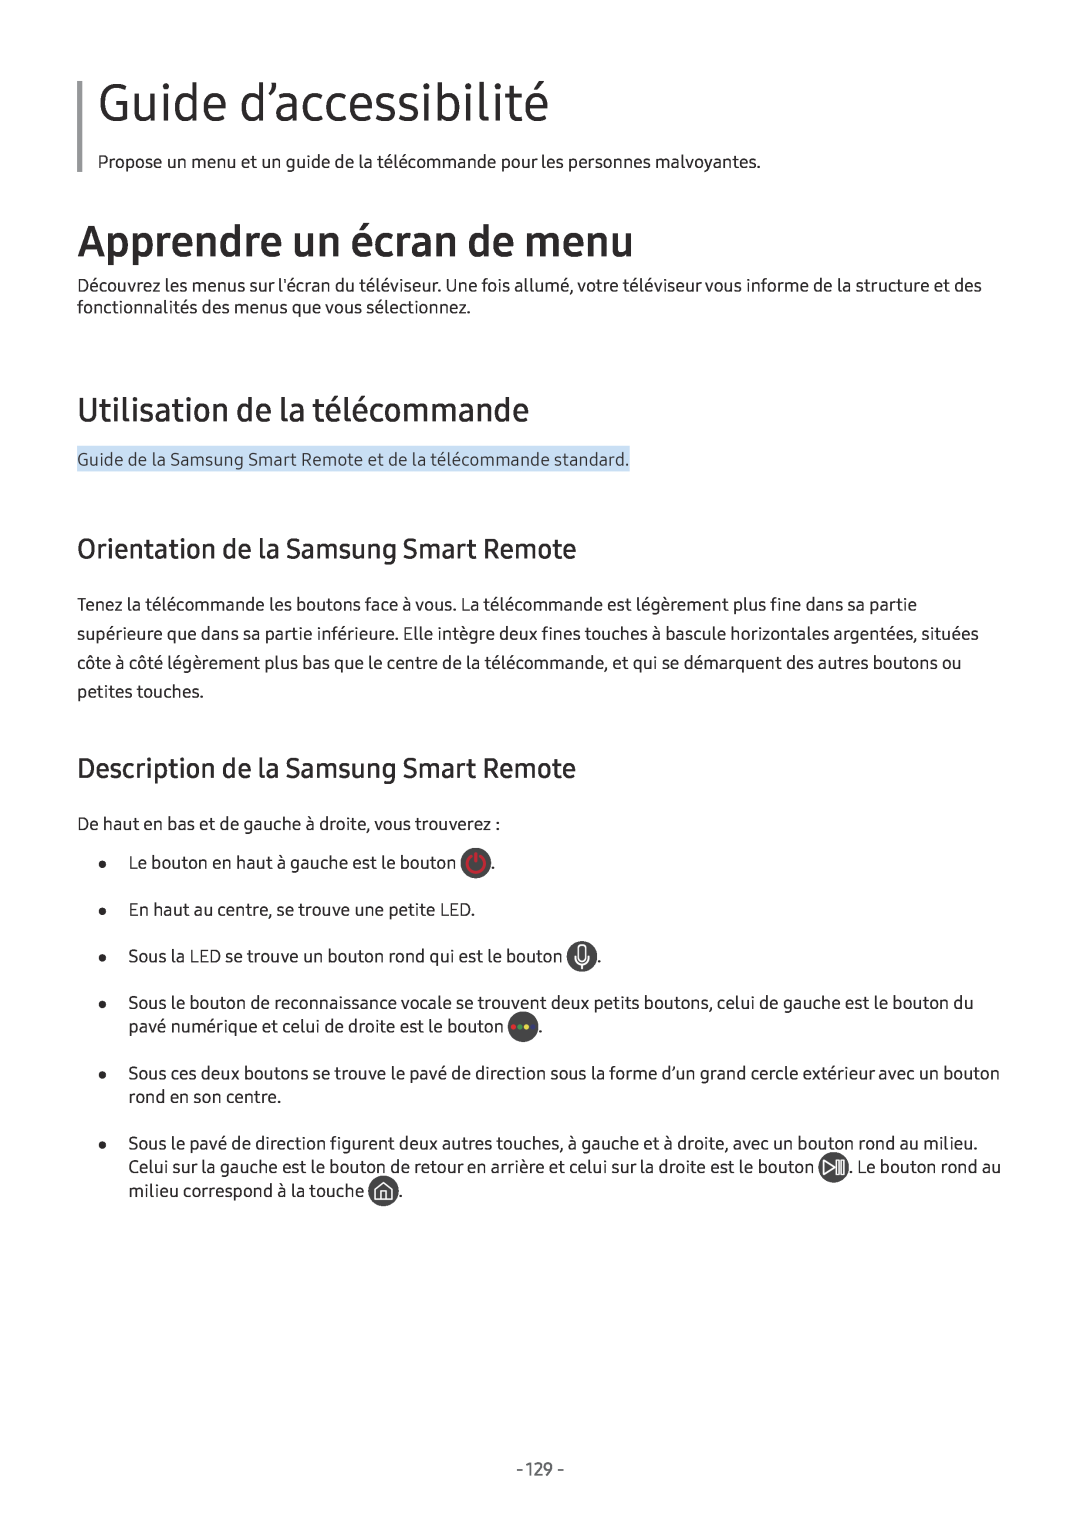 Samsung UE49MU7005TXXC manual Guide d’accessibilité, Utilisation de la télécommande, Orientation de la Samsung Smart Remote 